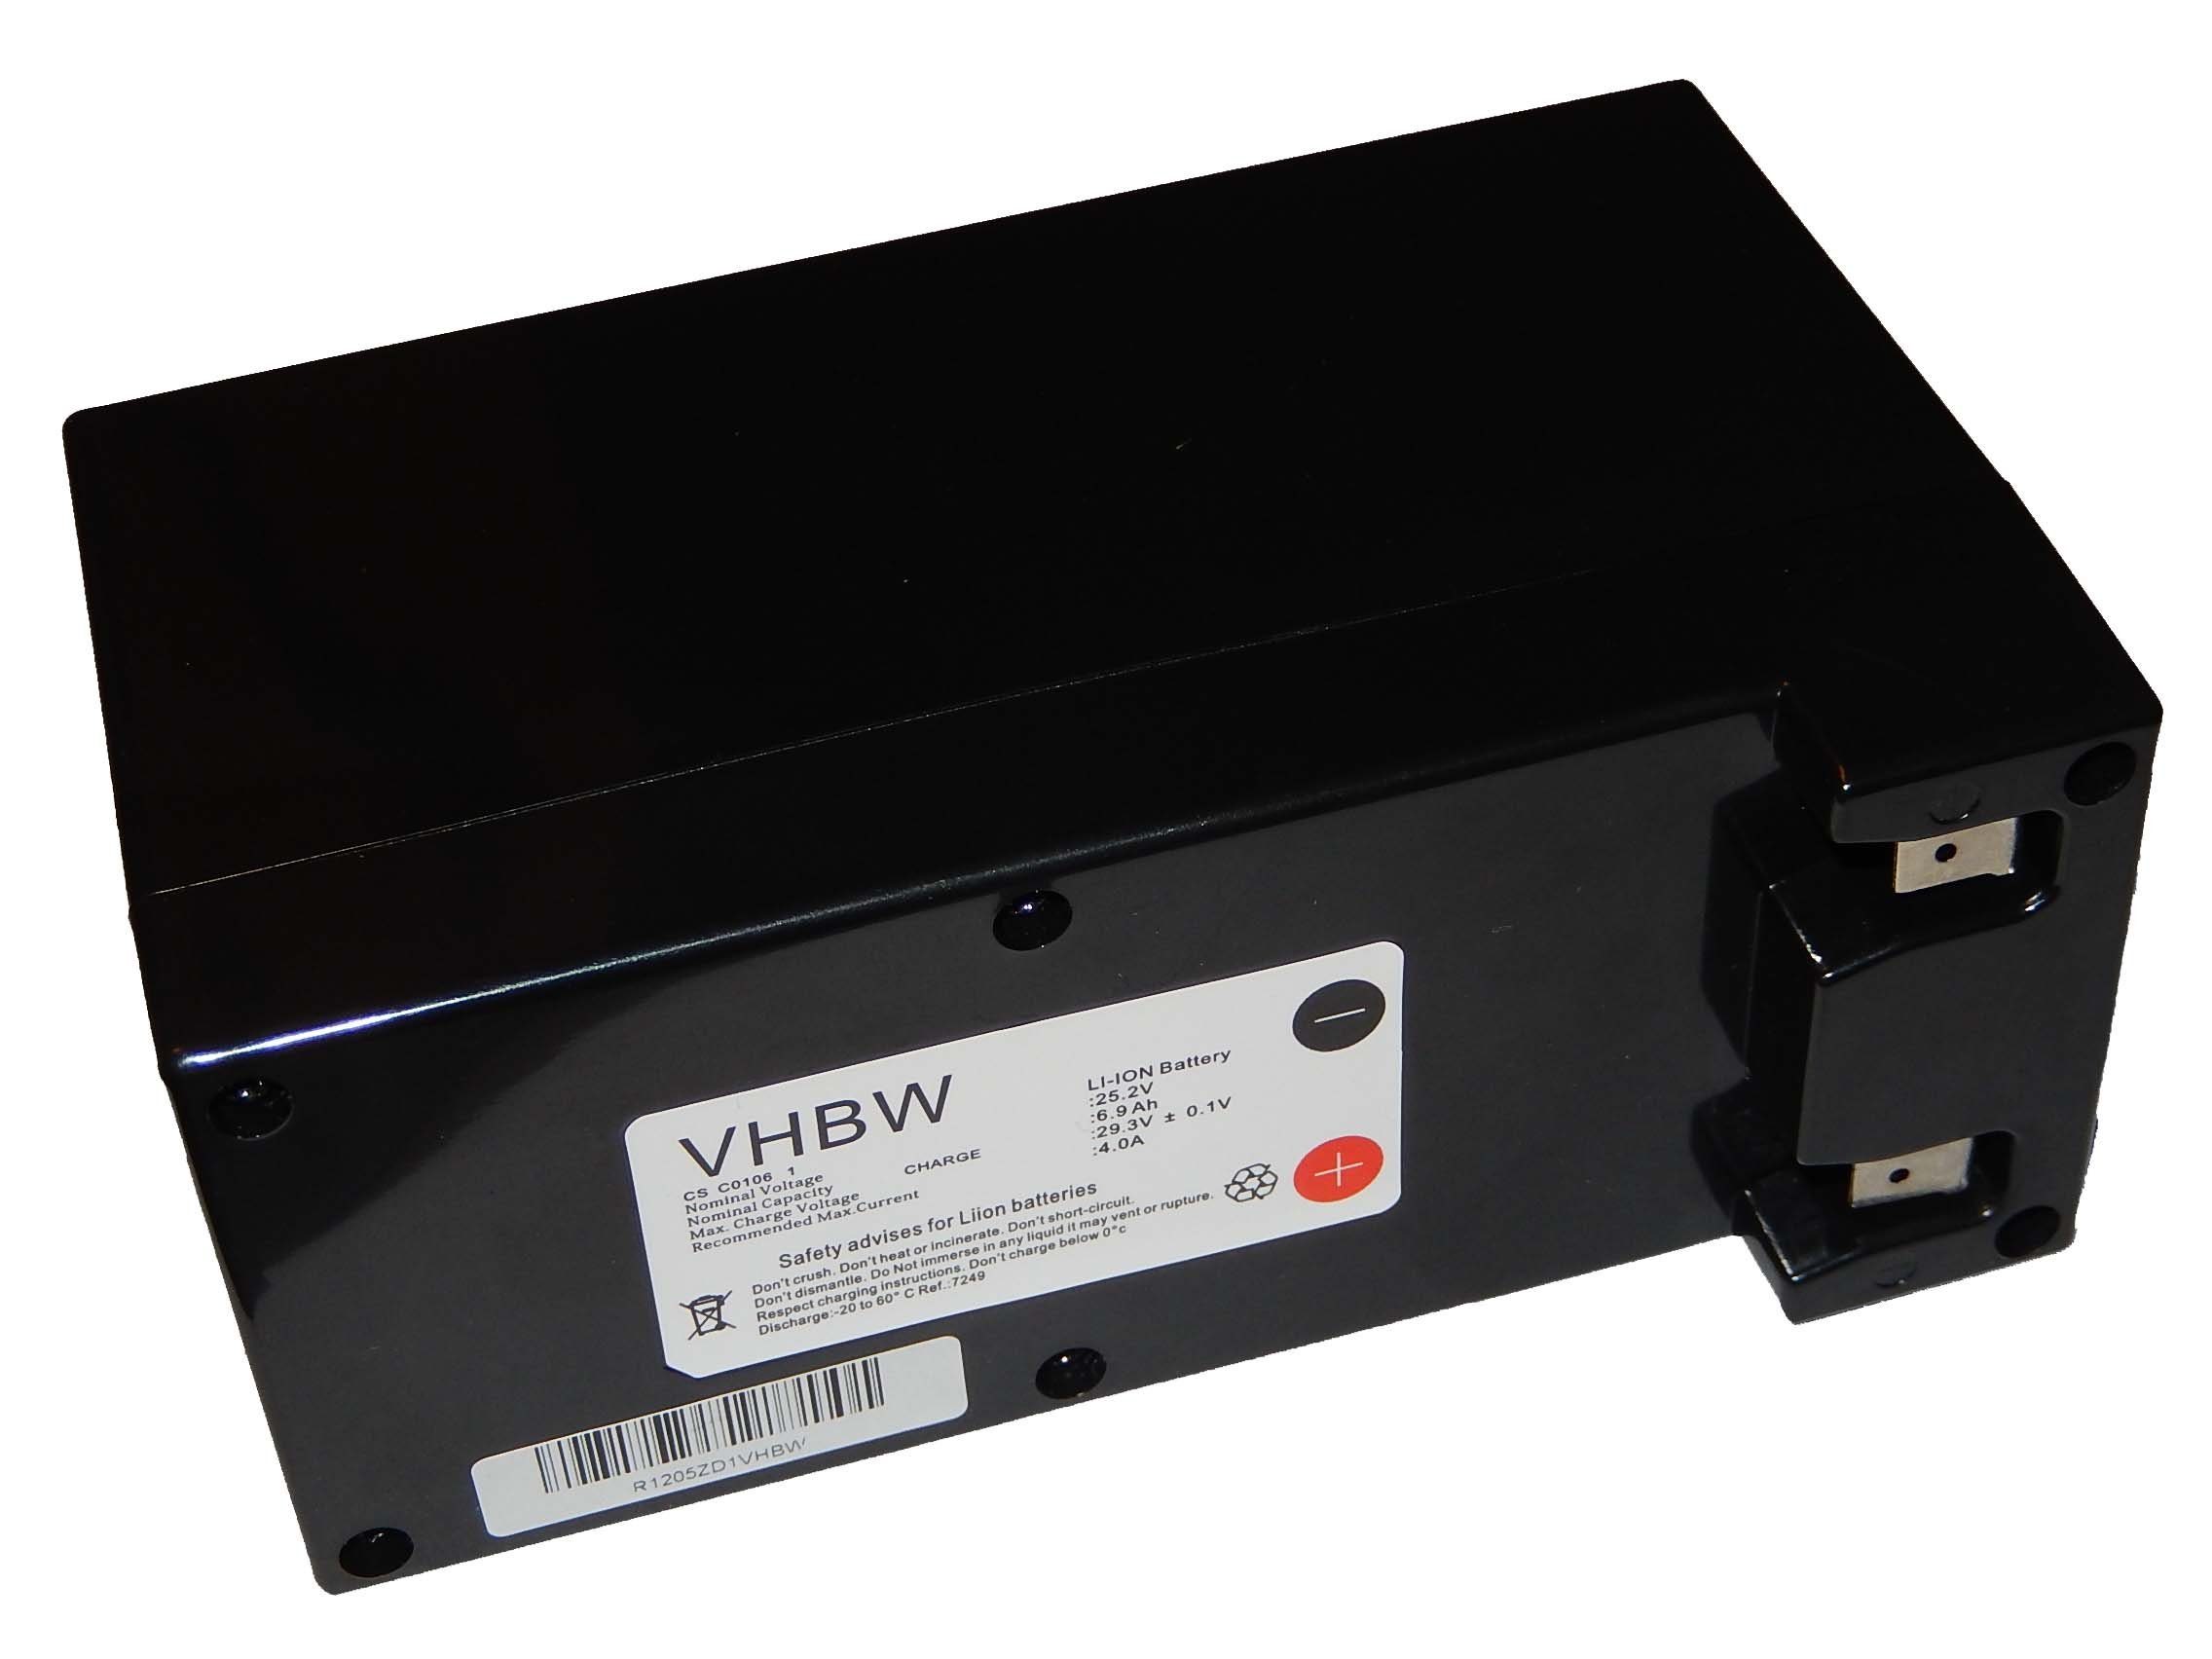 vhbw kompatibel mit Lawnbott Lb1500, Lb1500 SpyderEVO Akku Li-Ion 6900 mAh (25,2 V)